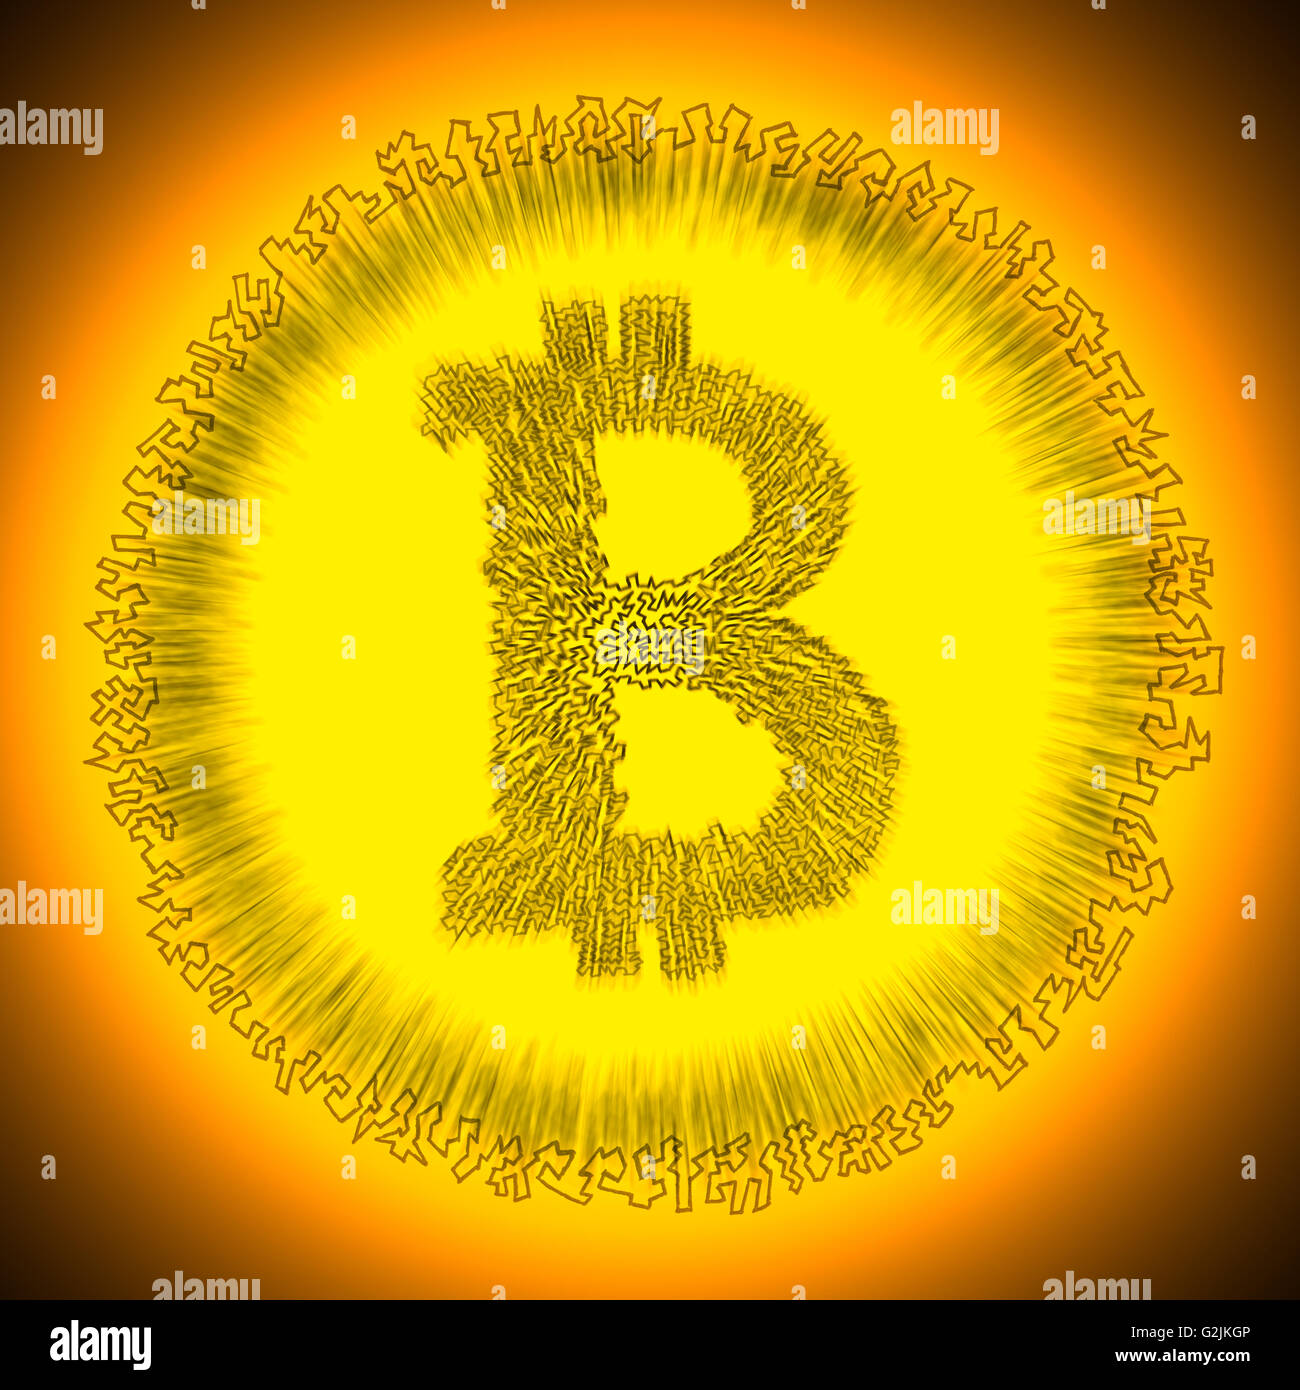 Logotipo dorado serrada Bitcoin radiante. Ilustración de una moneda digital cryptocurrency descentralizada. Foto de stock